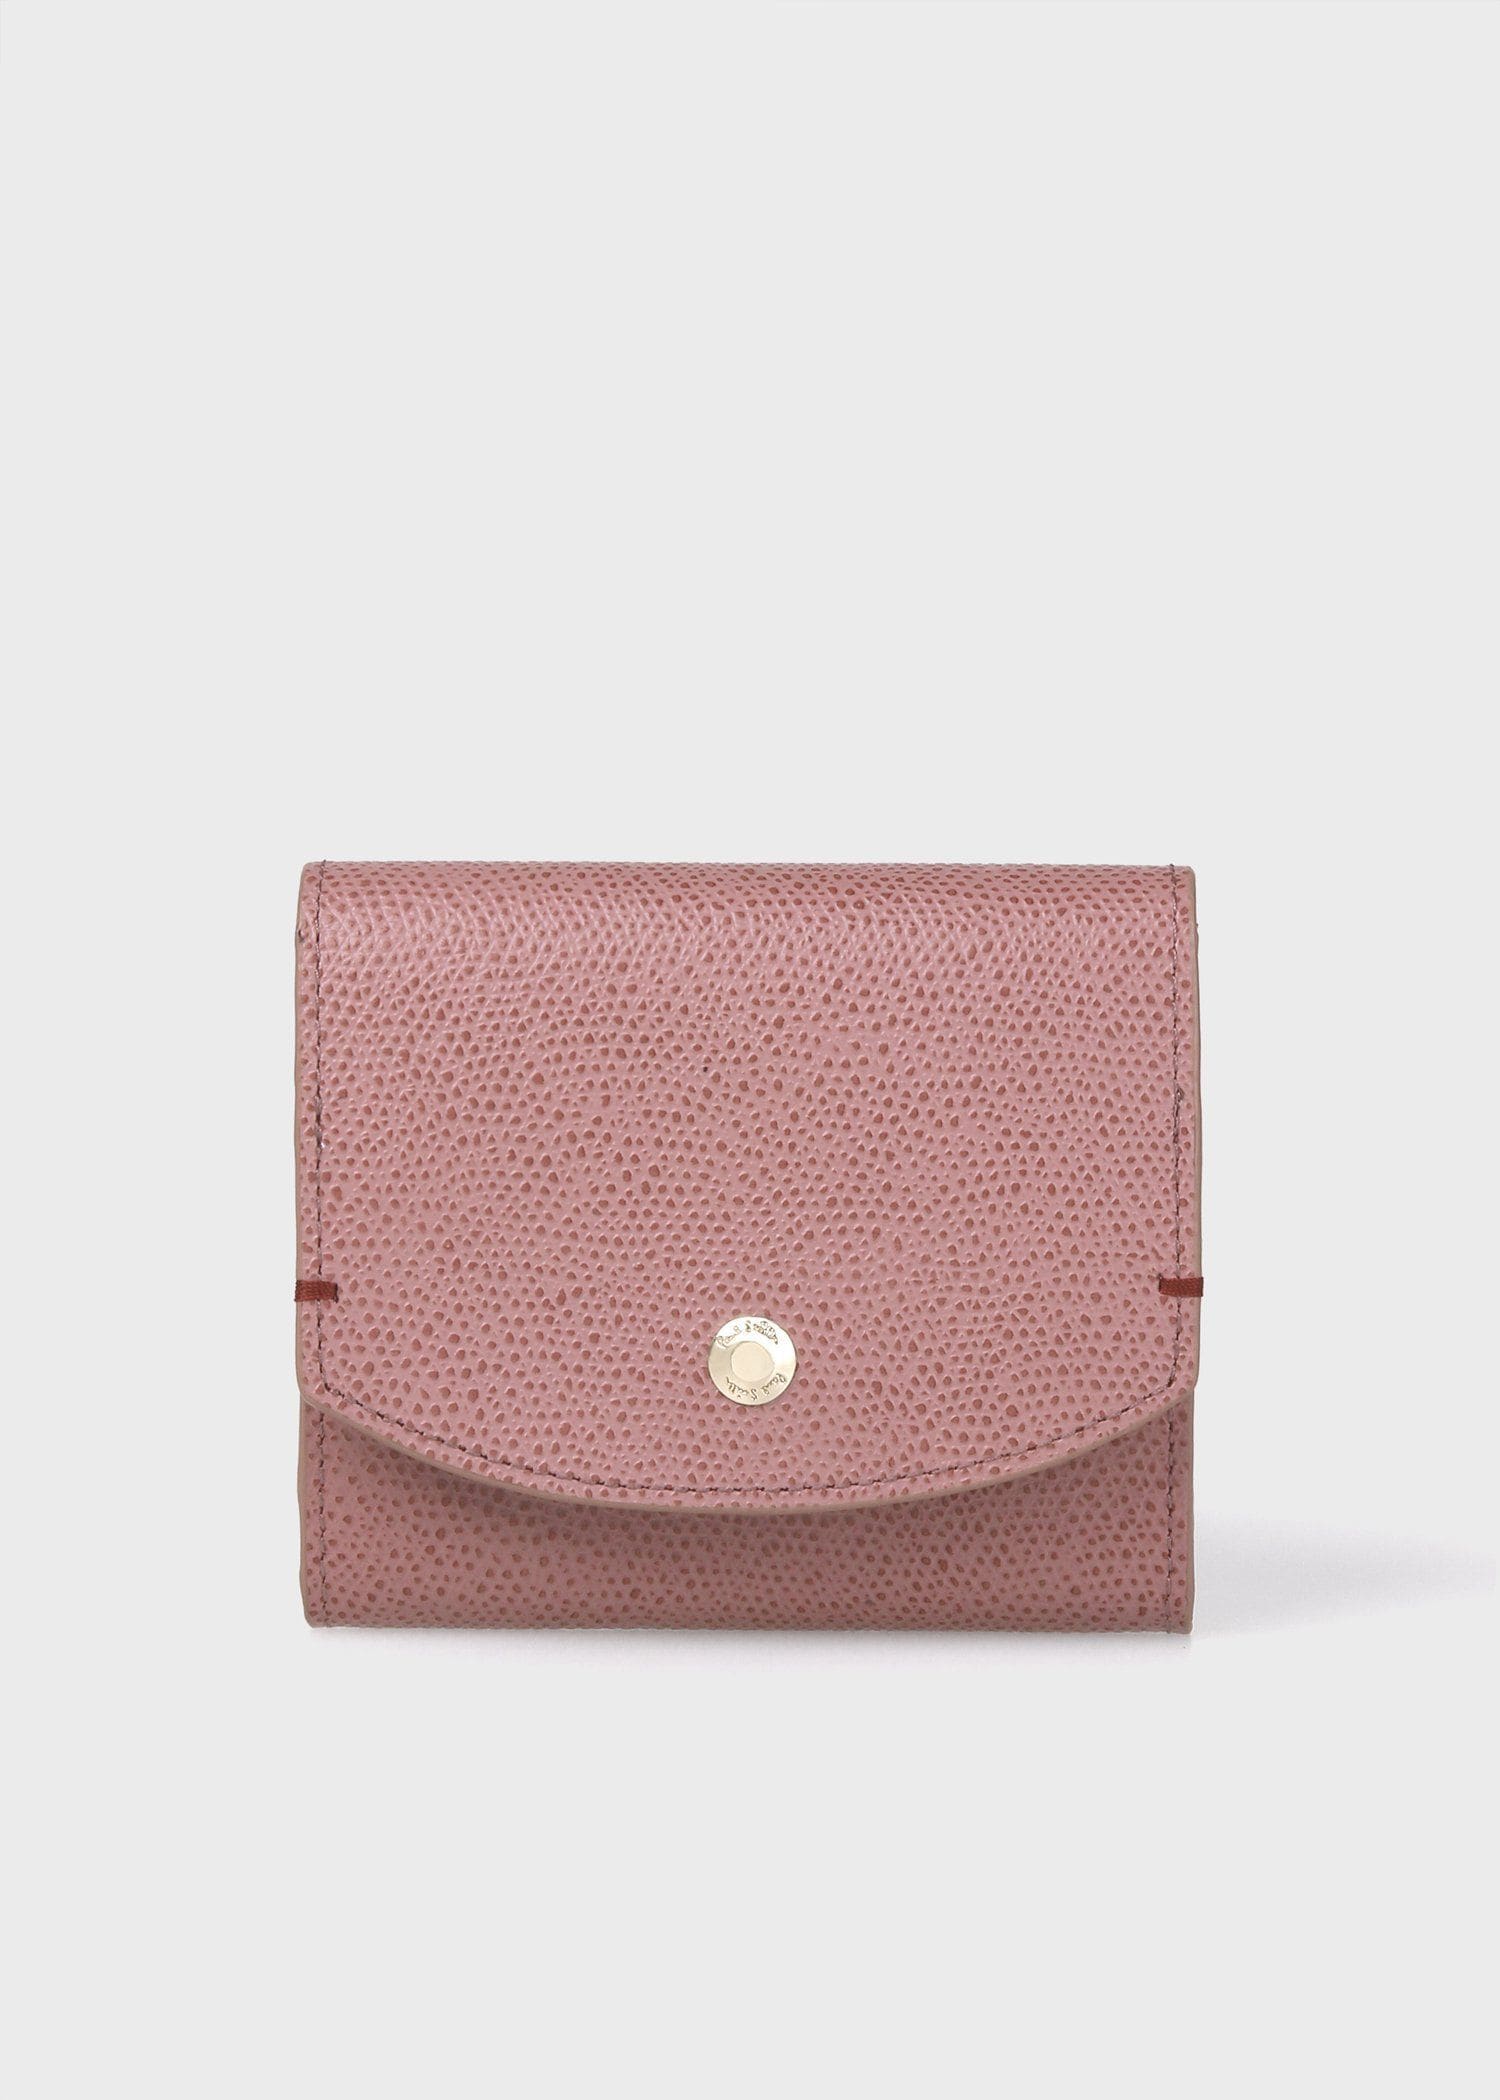 【新品未使用】 Paul Smith マルチカラー 二つ折り 財布 ピンク